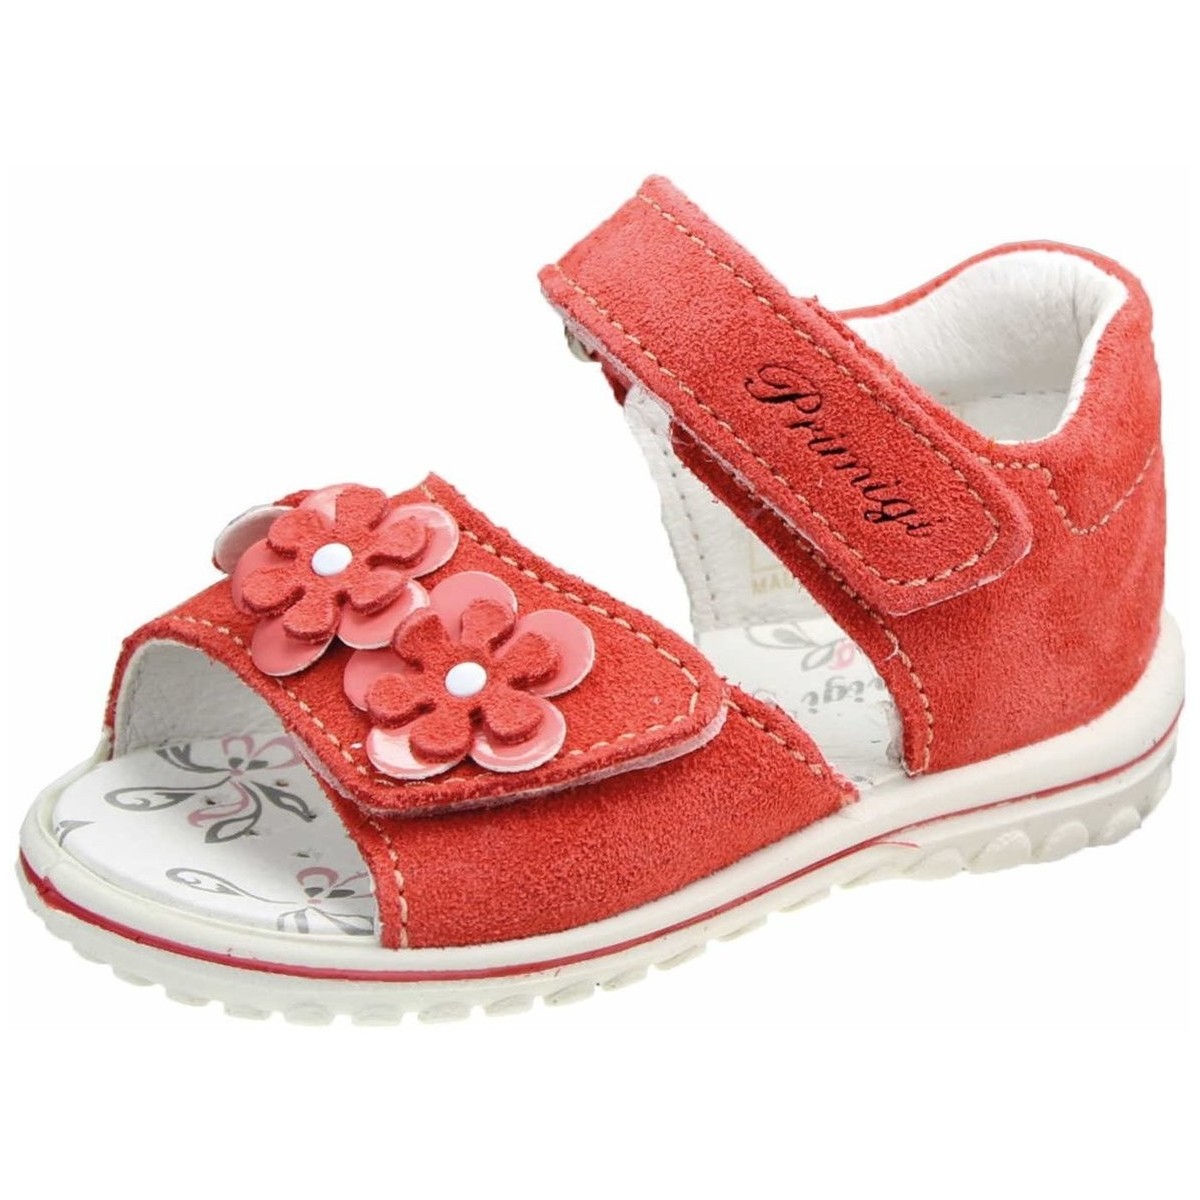 Schuhe Mädchen Babyschuhe Primigi Maedchen mango (mittel) 7375-100 Rot